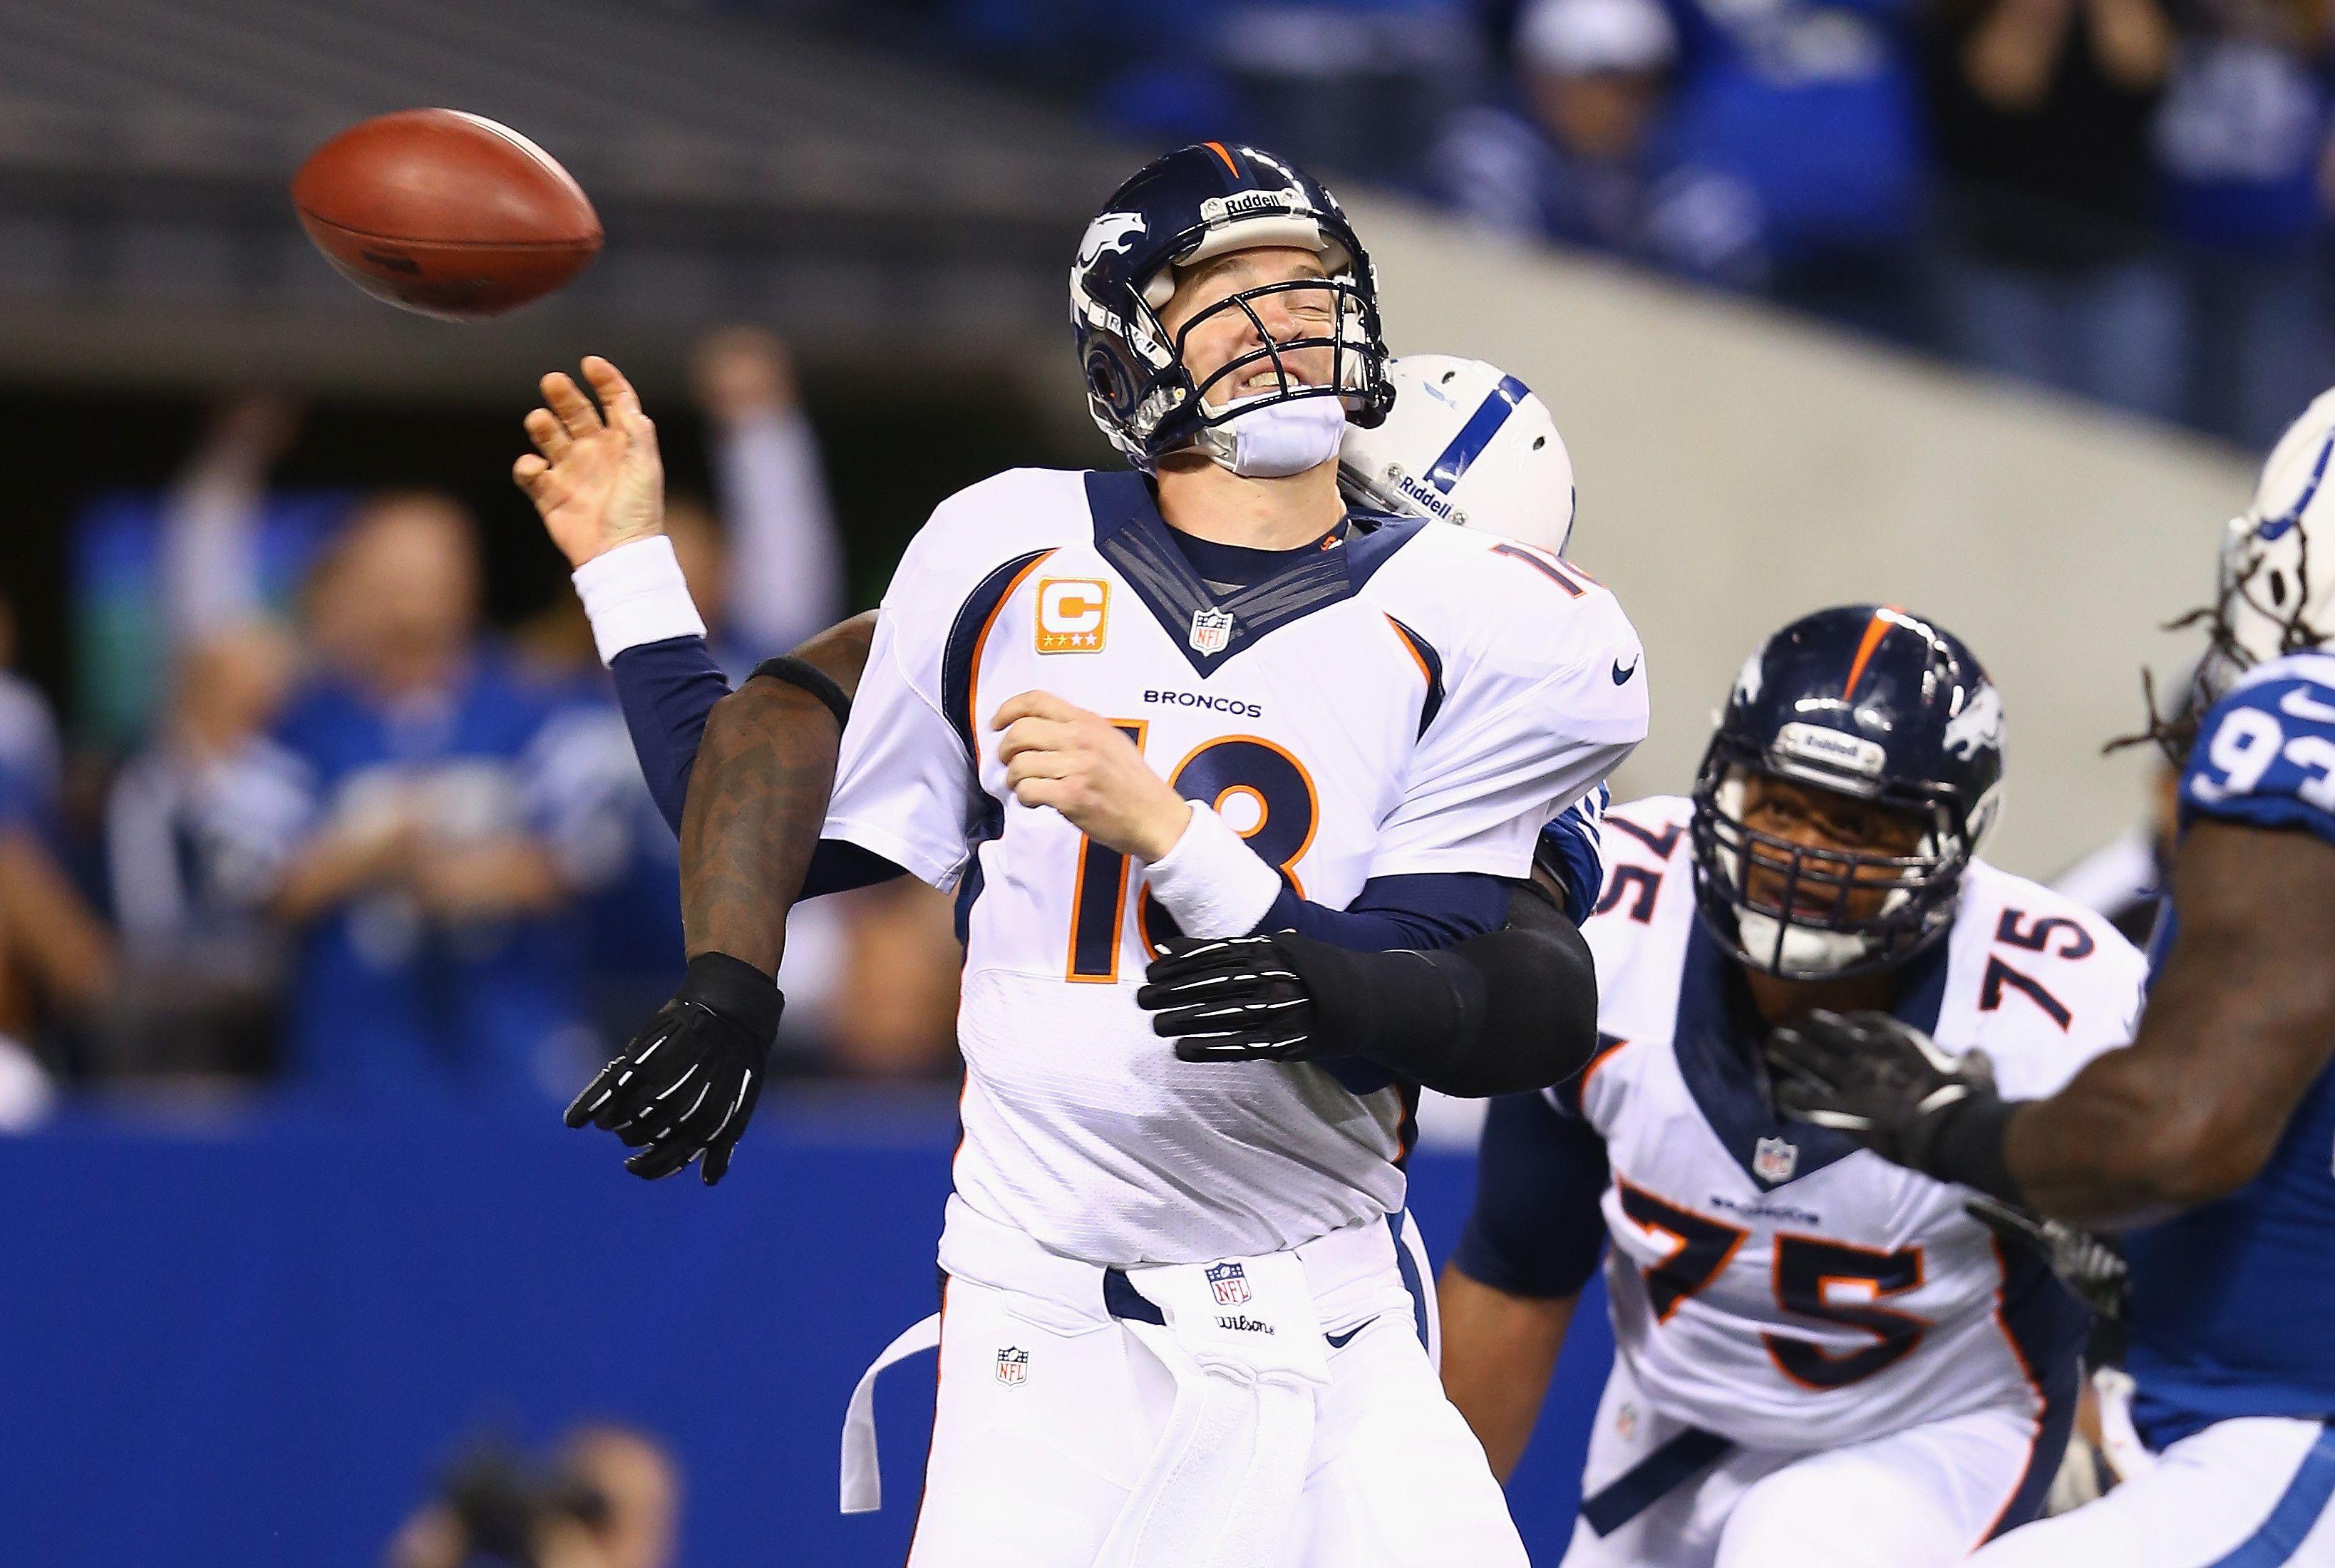 Robert Mathis Sacks Peyton Manning: Photo Sums Up Indianapolis